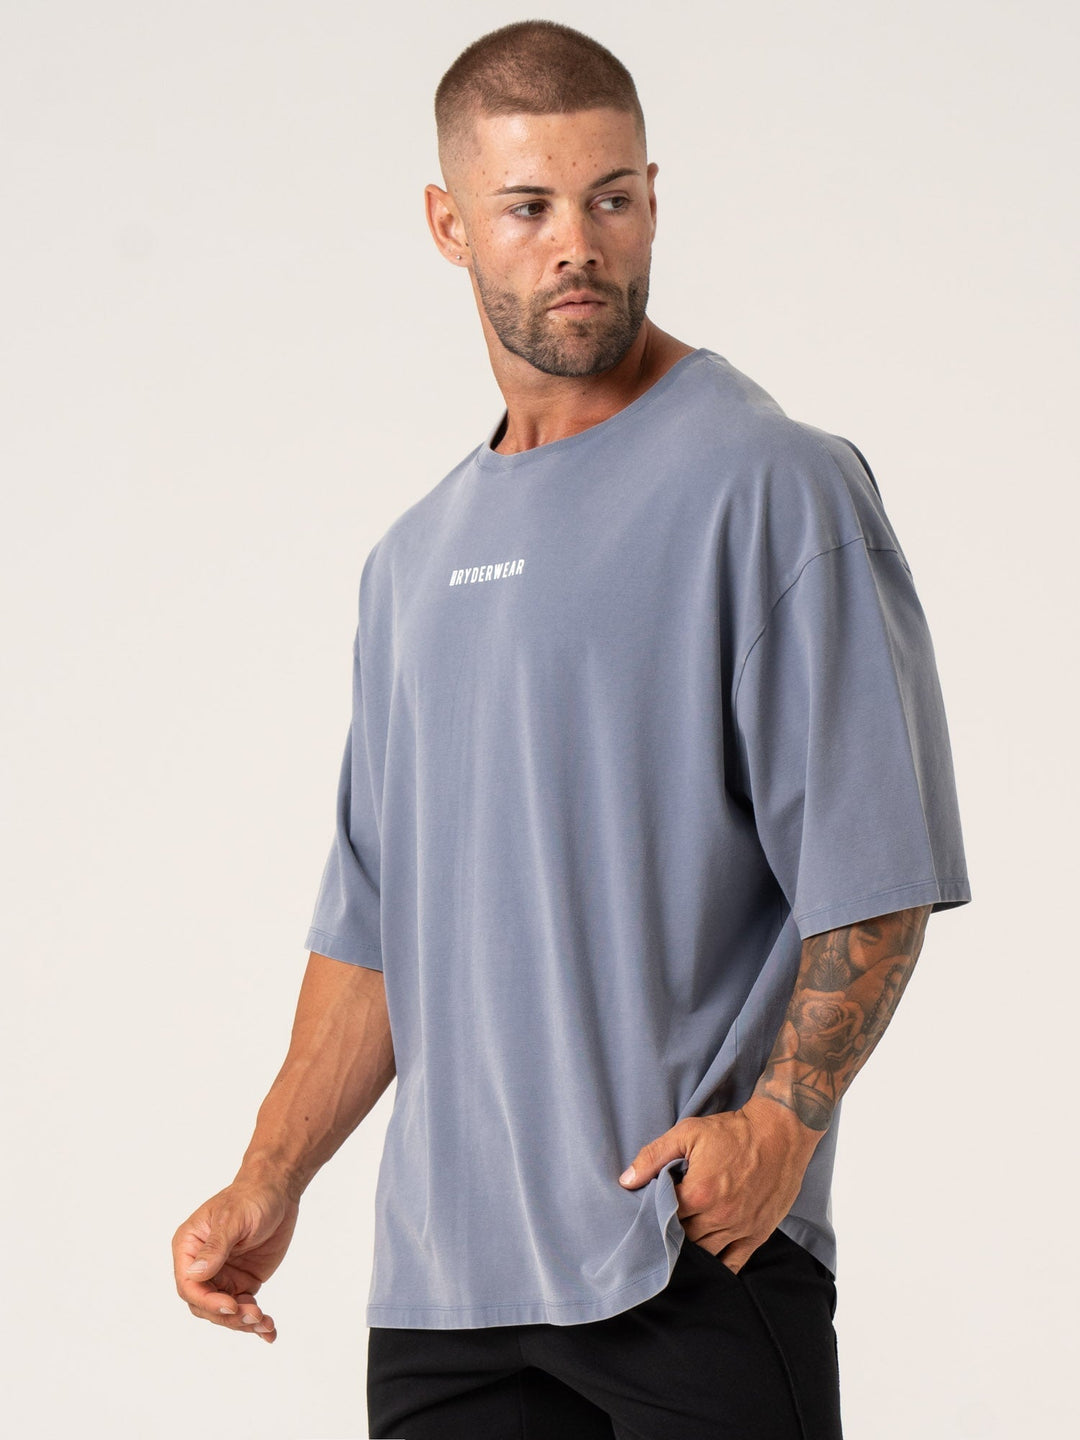 Pursuit Oversized T-Shirt - Denim Blue Stonewash Clothing Ryderwear 